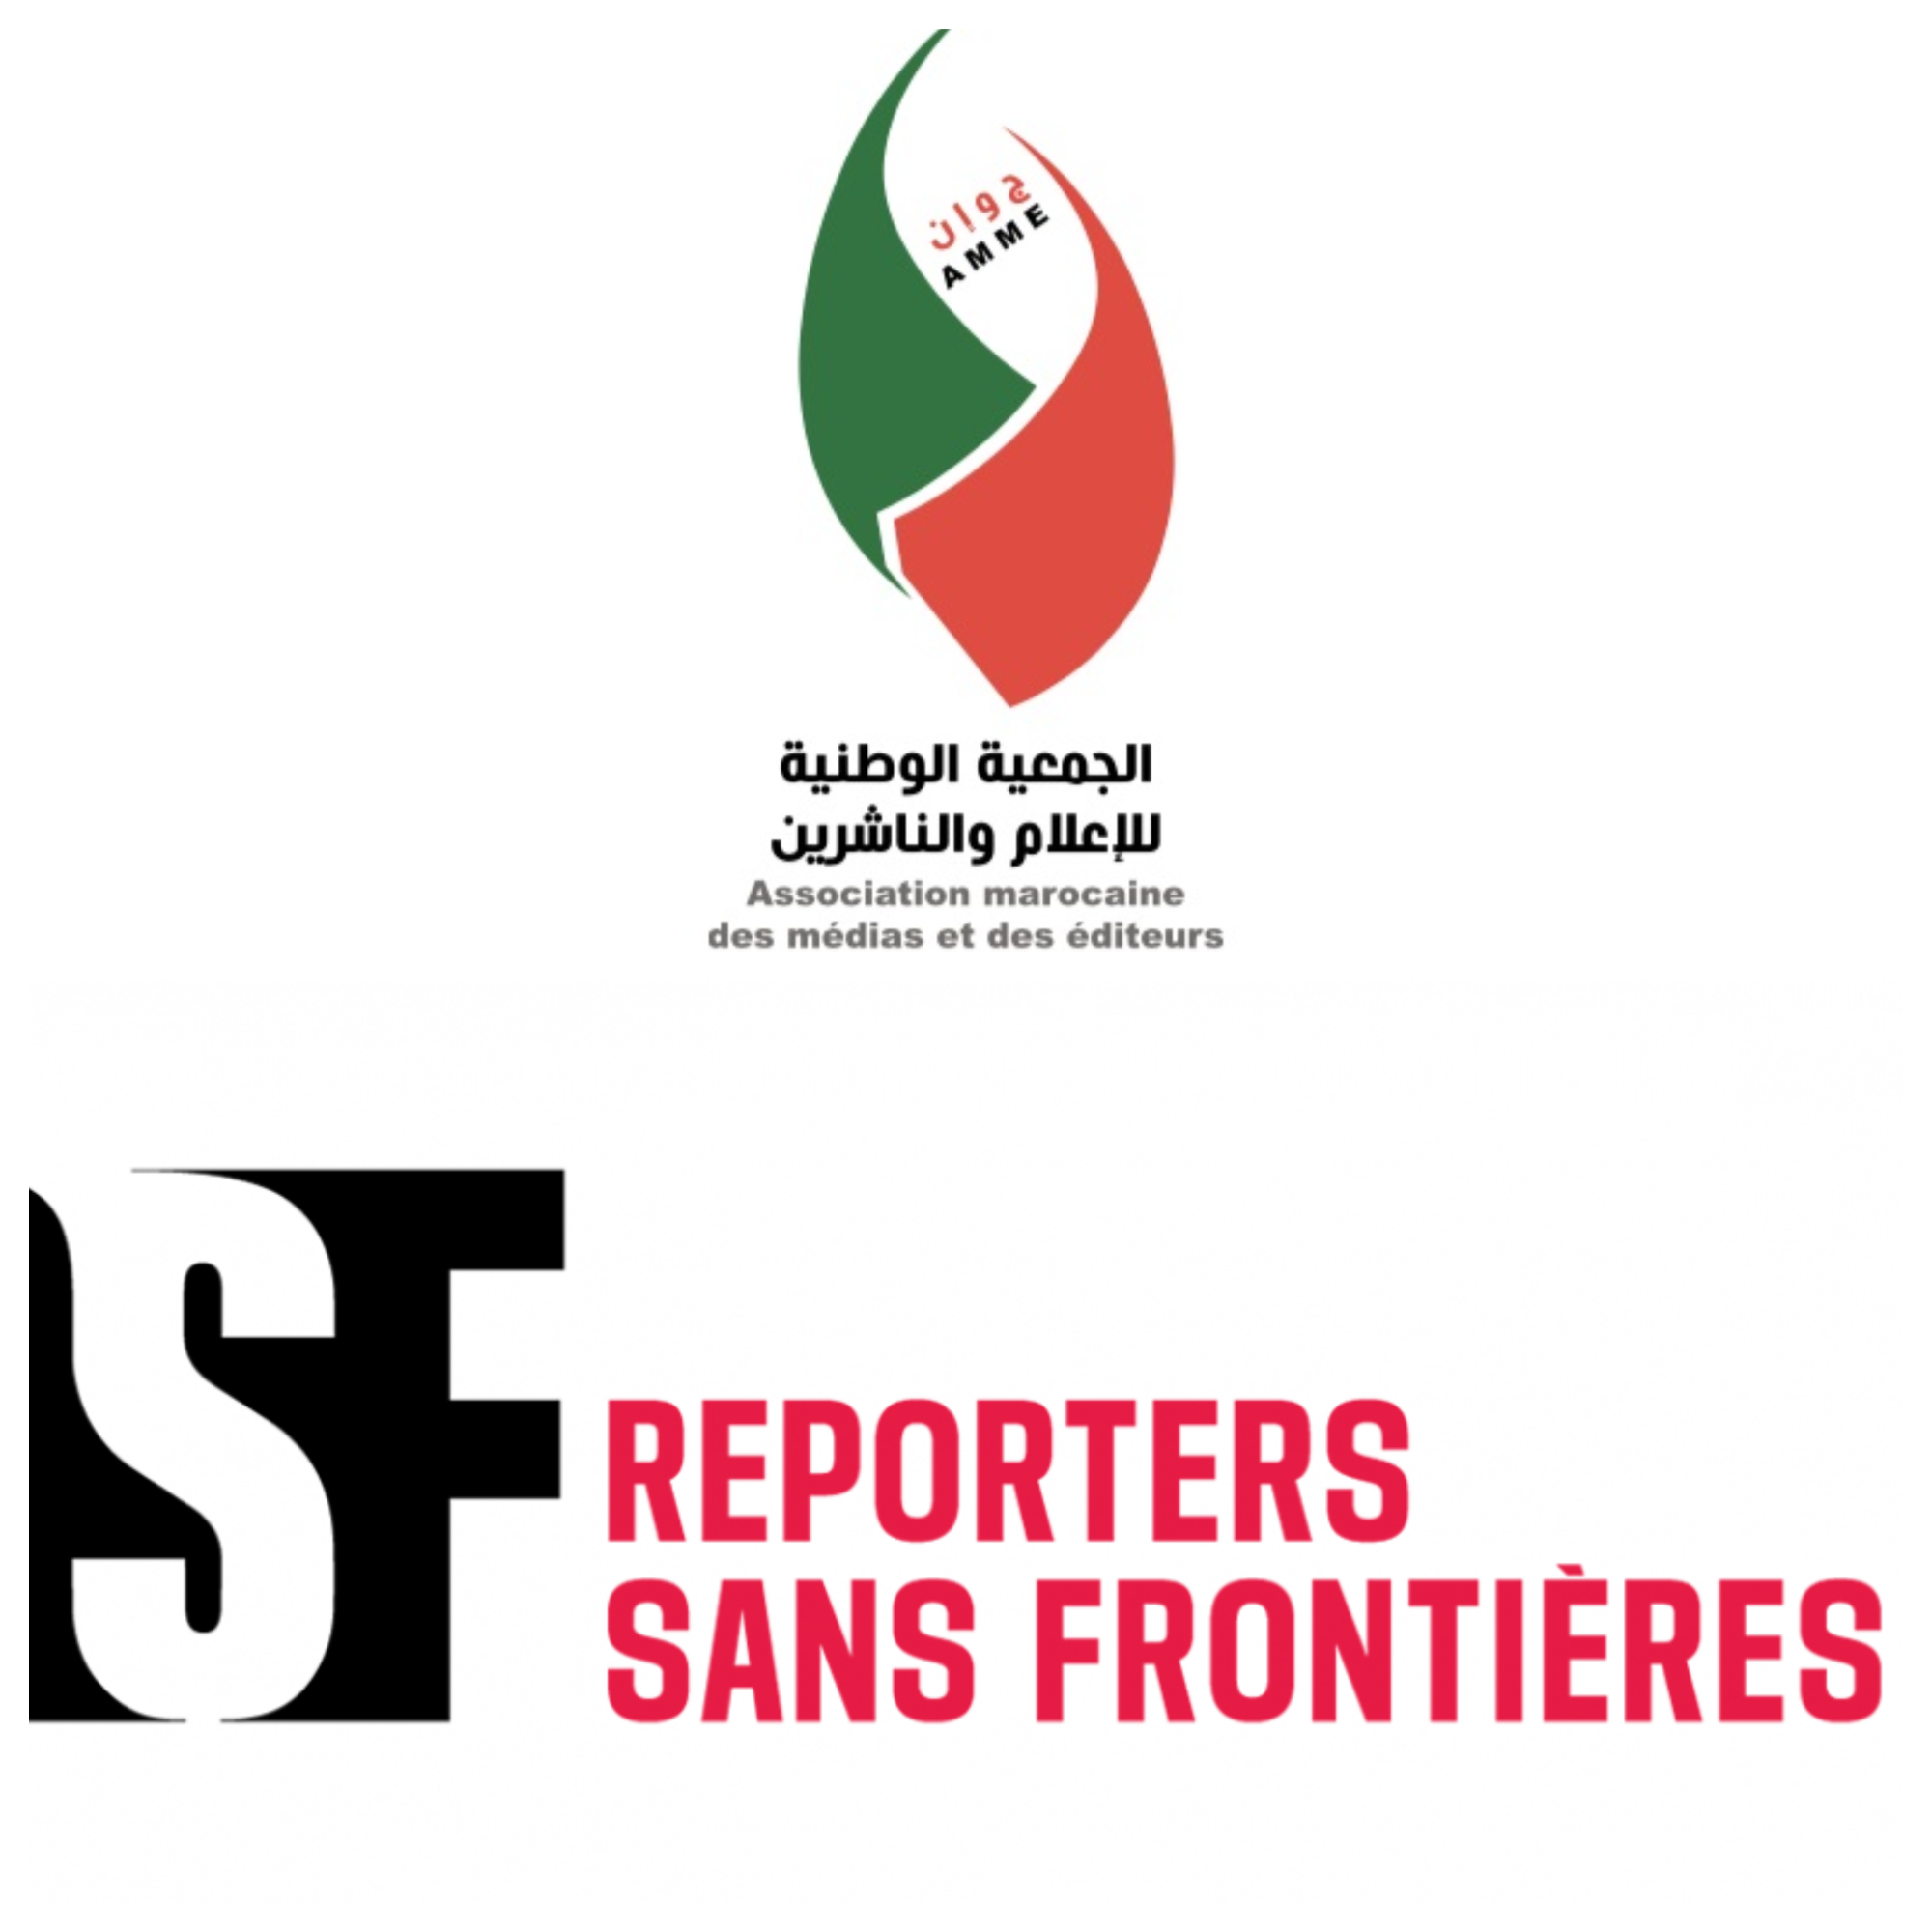 Liberté de la presse au Maroc : L’ANME dénonce le rapport "fallacieux" de Reporters sans frontières